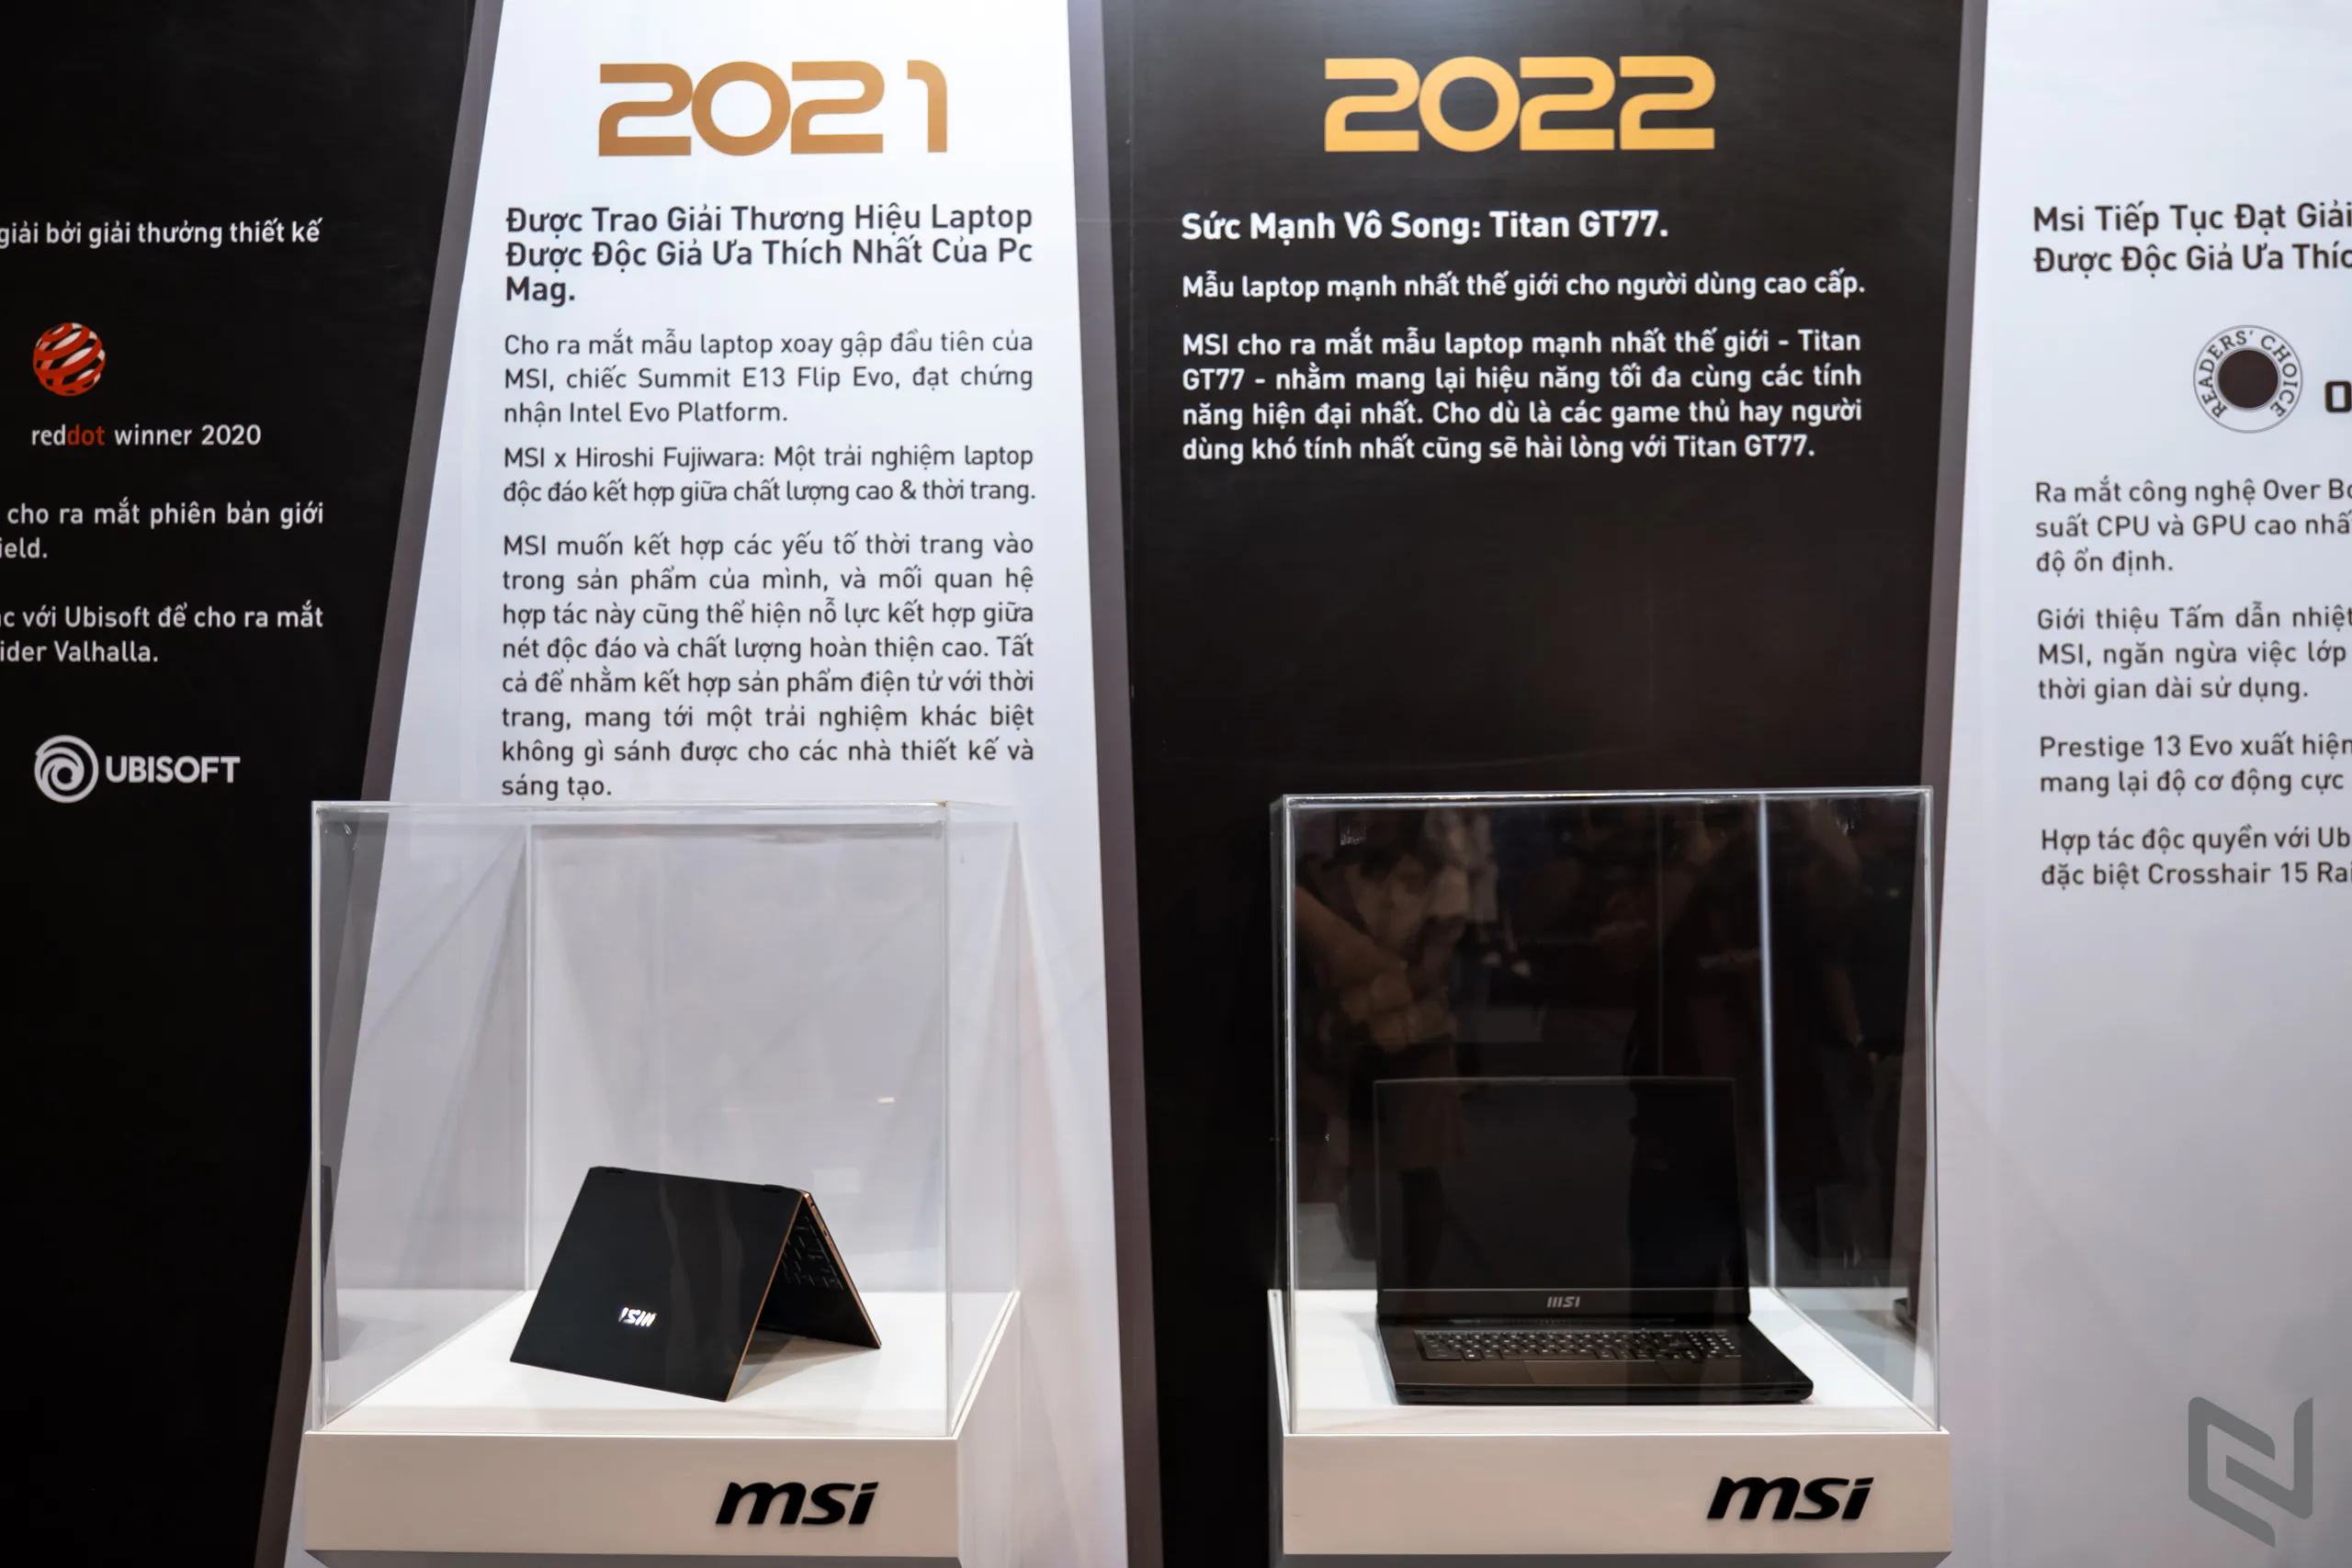 Sự kiện kỷ niệm 20 năm laptop MSI: Hành trình công nghệ đỉnh cao